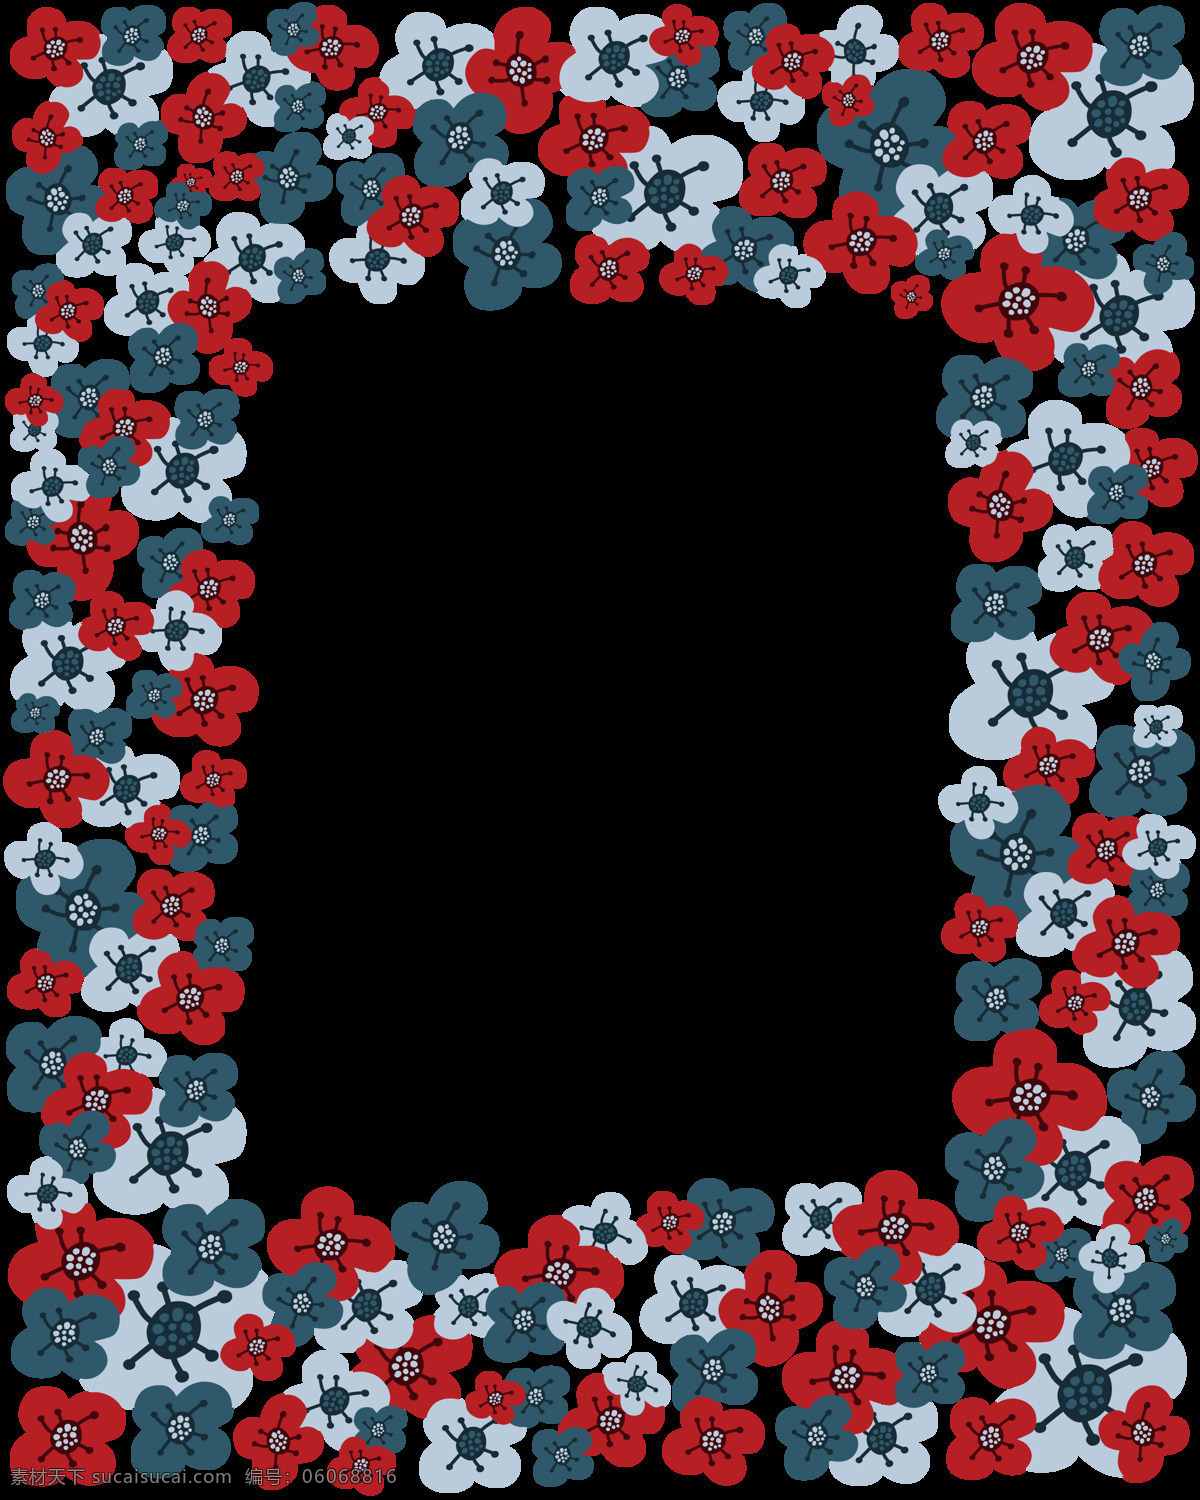 缤纷 花卉 边框 抠图专用 设计素材 背景素材